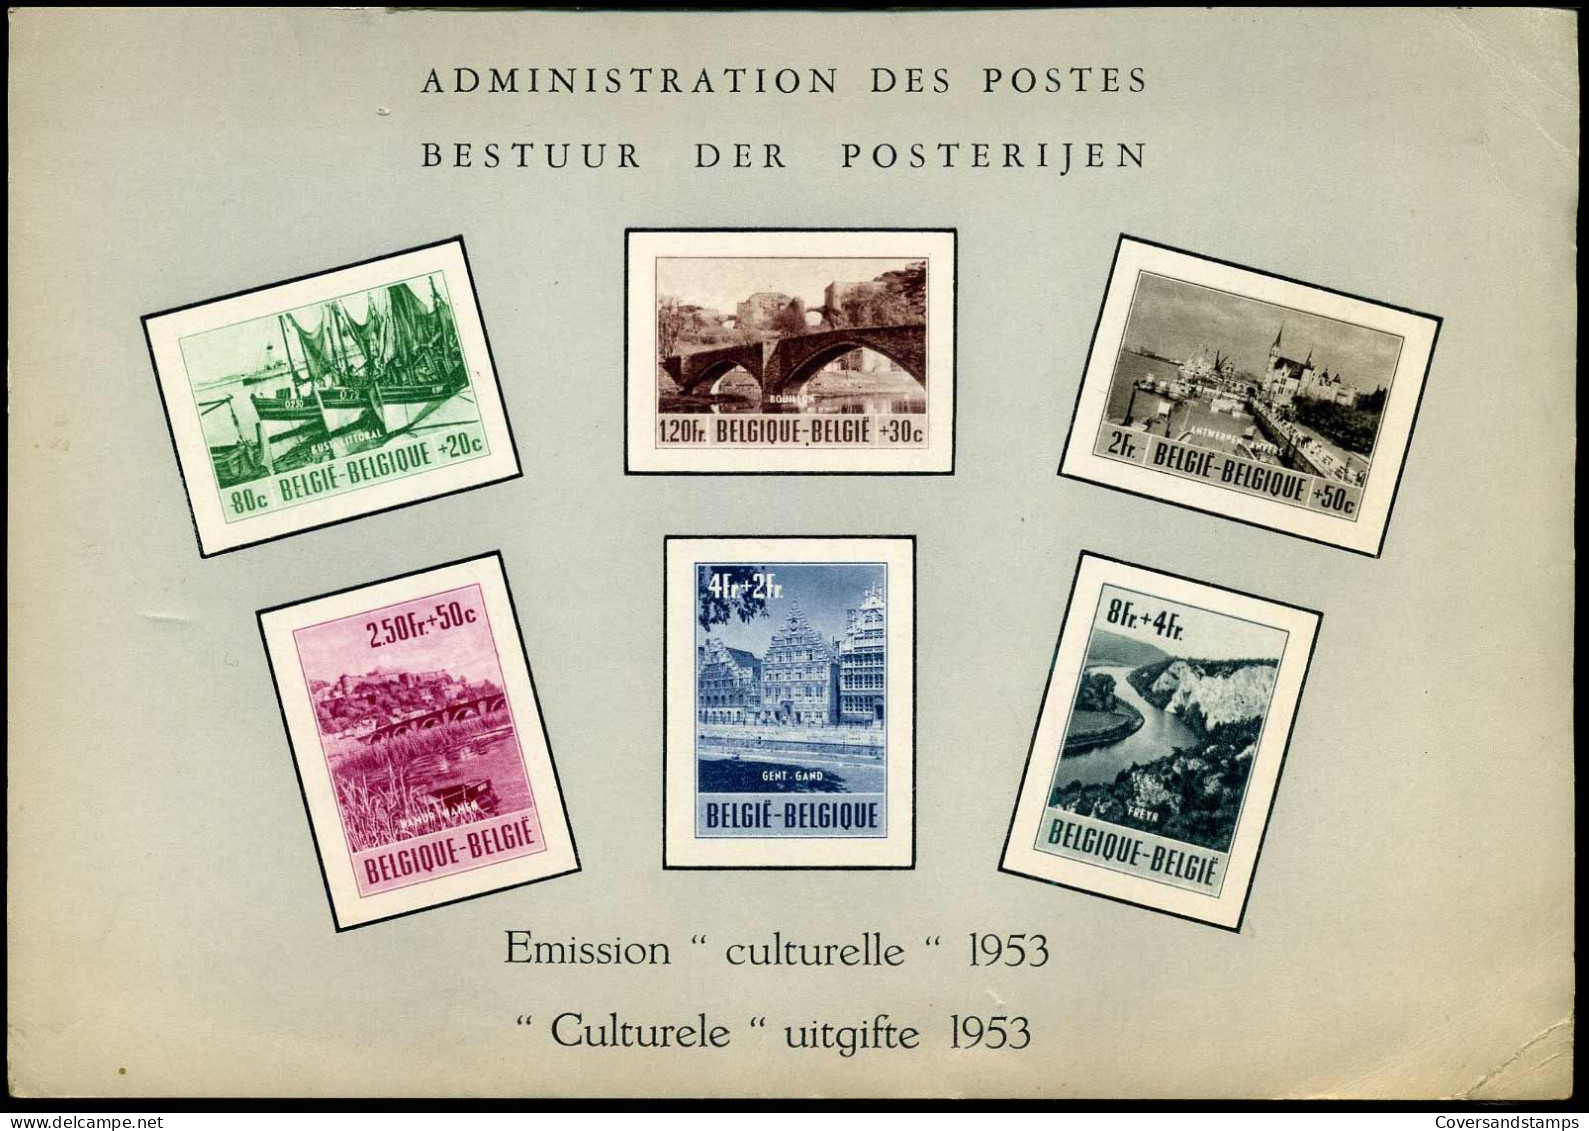 LX15 -- Culturele Uitgifte 1953 / Emission Culturelle 1953 -- Gekreukt / Petit Pli - Feuillets De Luxe [LX]